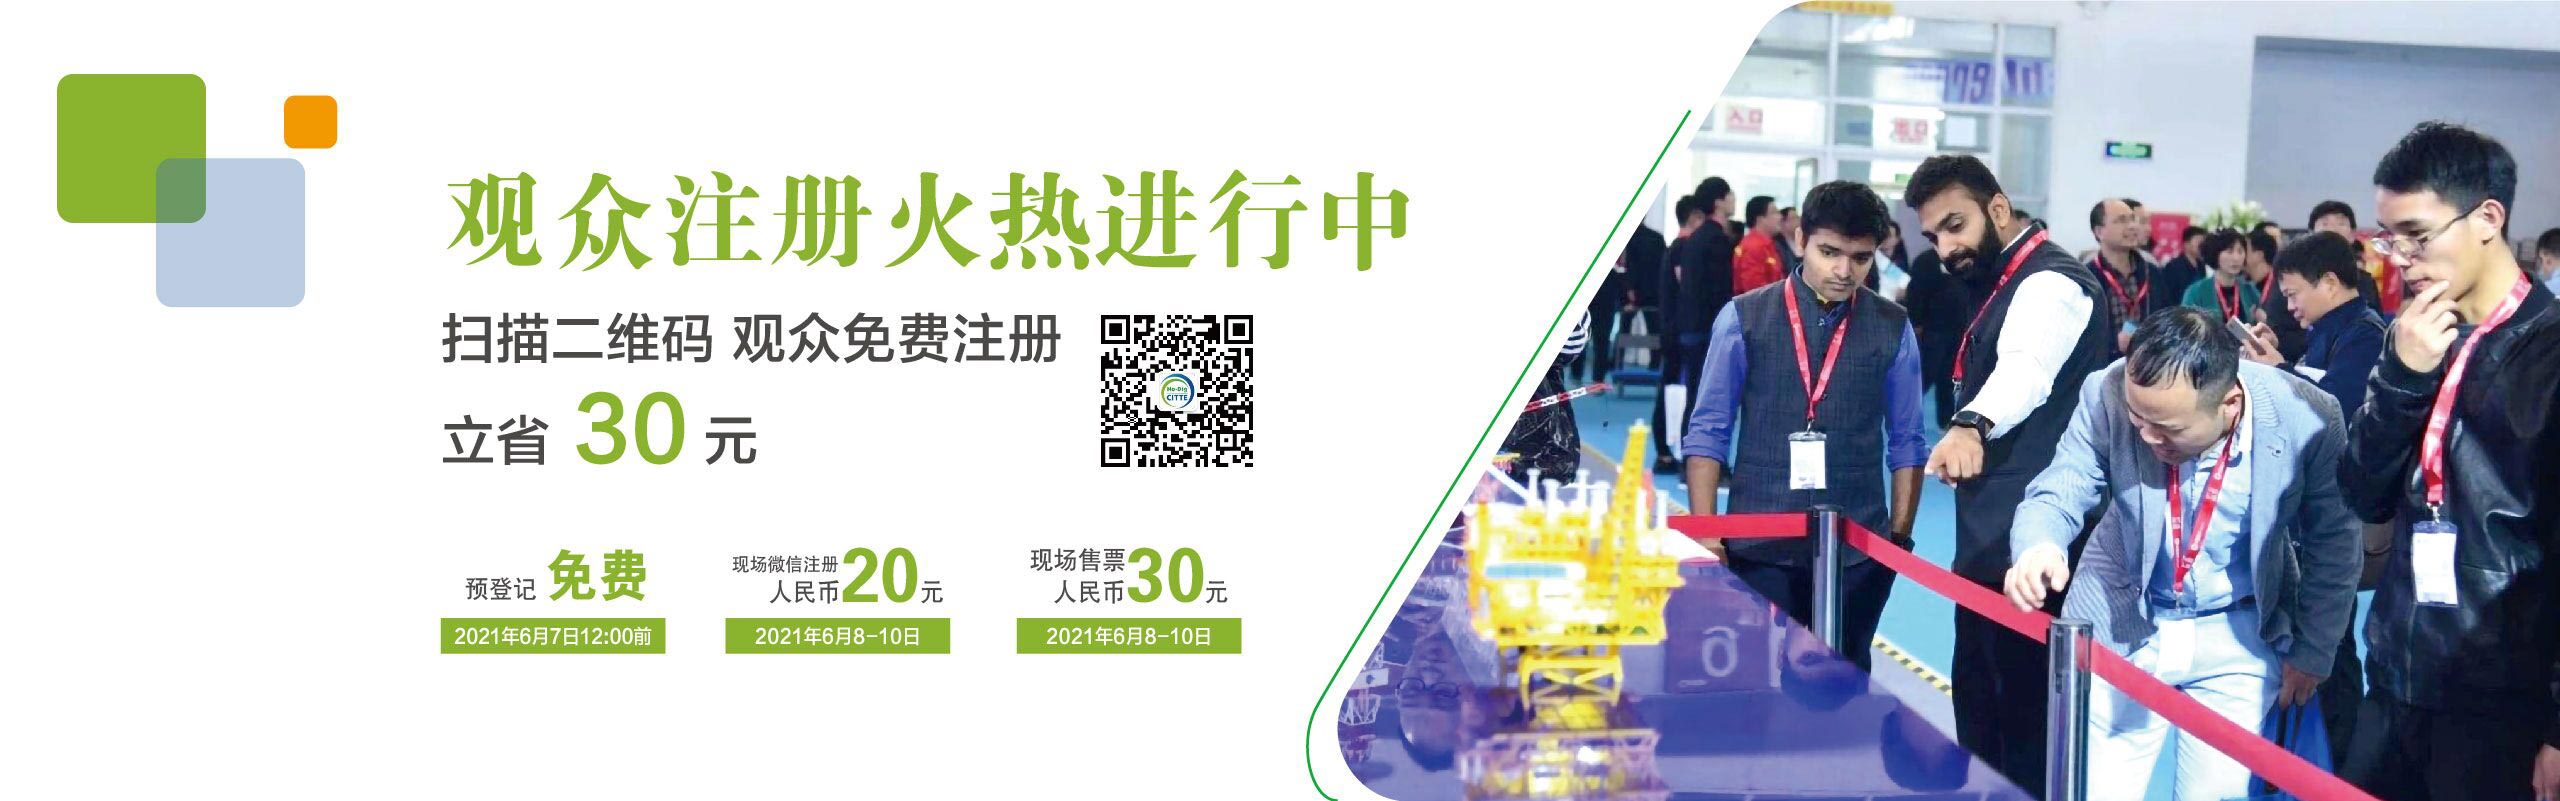 北京国际地下工程建设及非开挖技术装备展览会